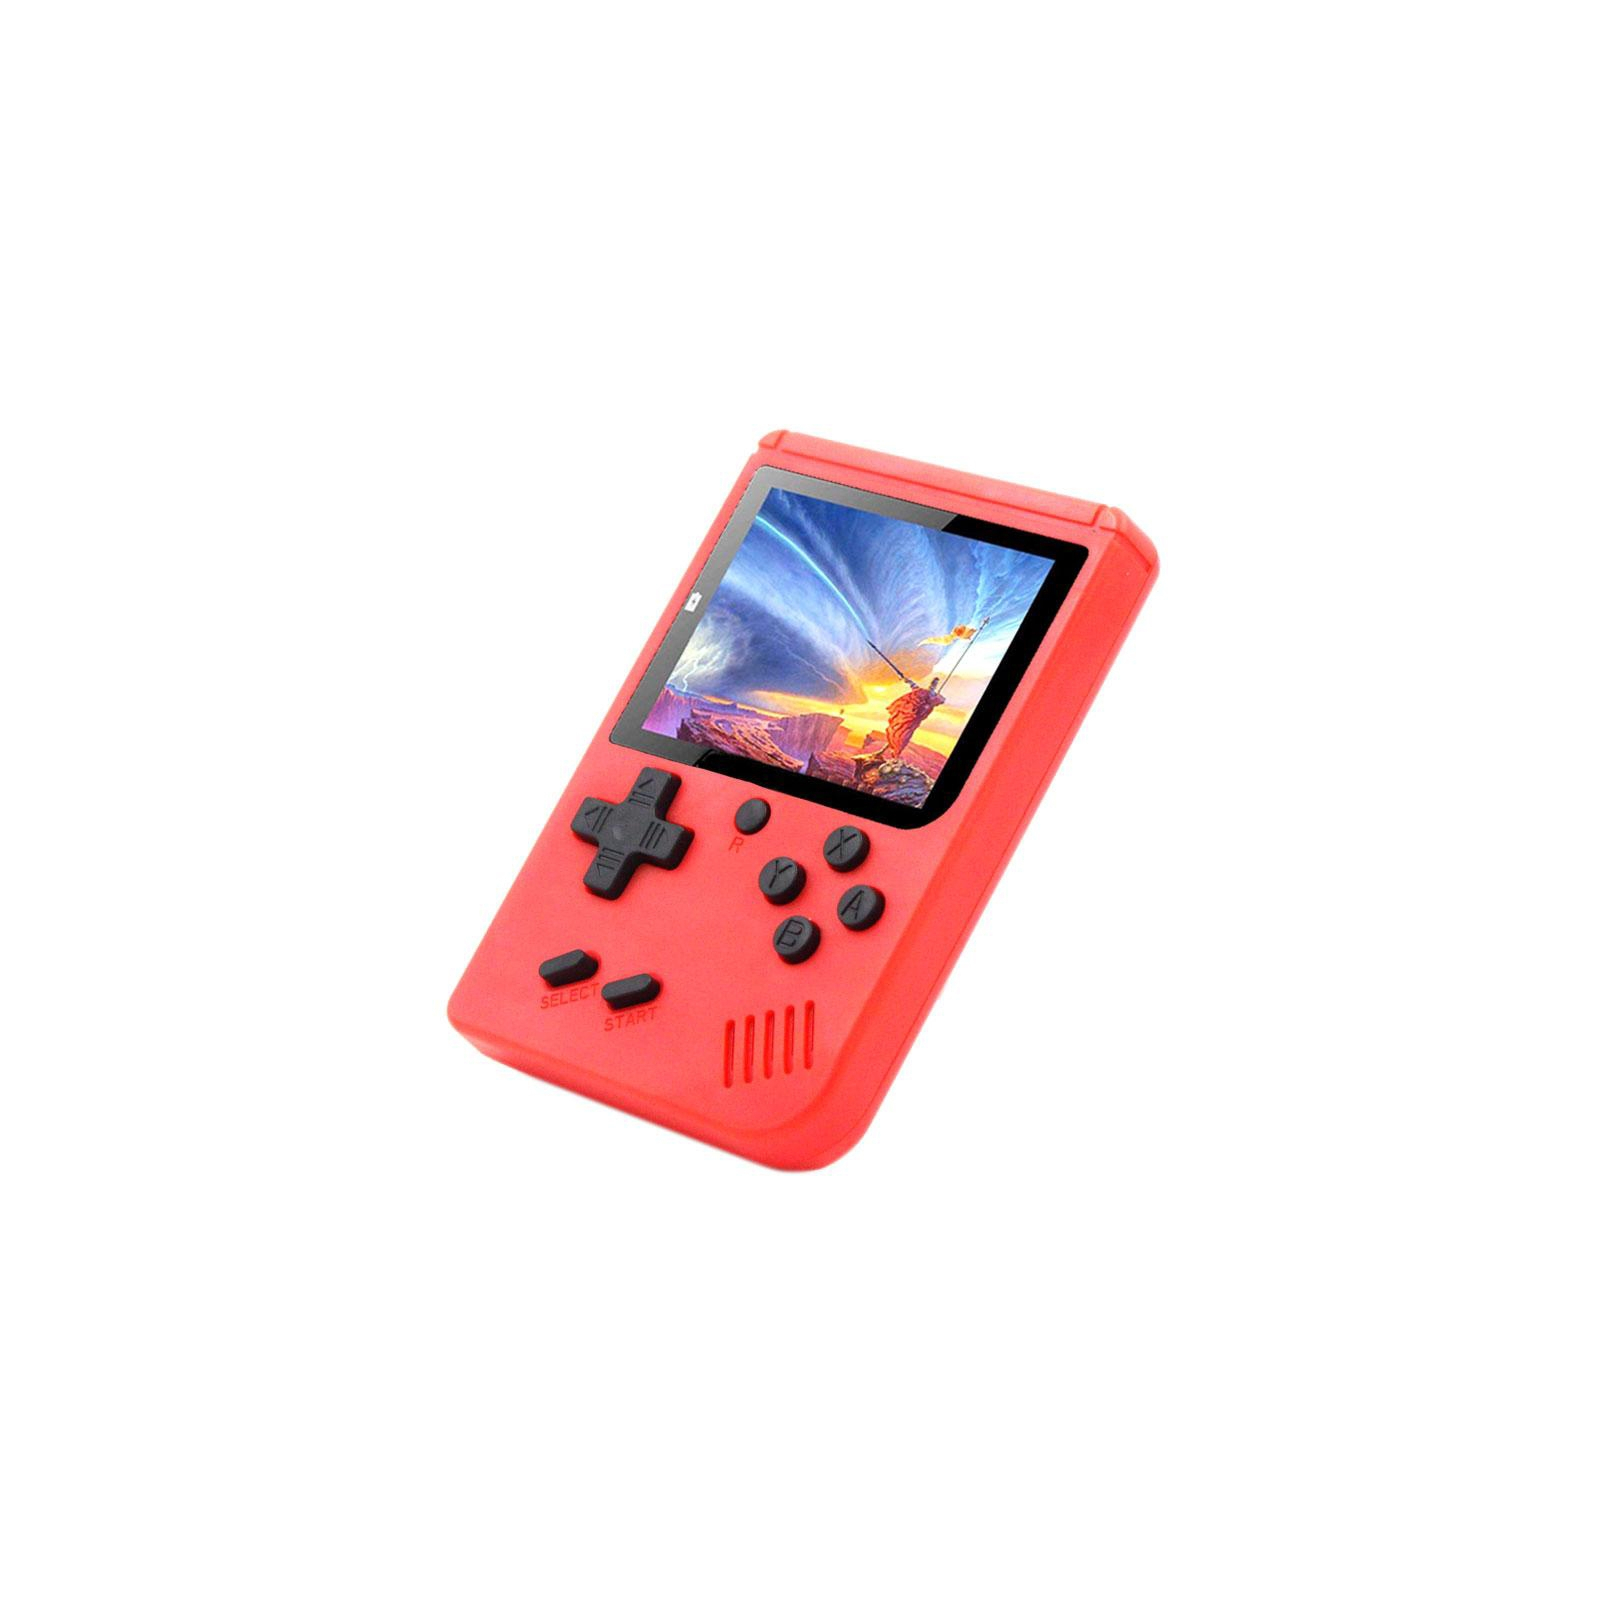 Інтерактивна іграшка XoKo ігрова консоль Hey Boy червона (XOKO НB-RD)